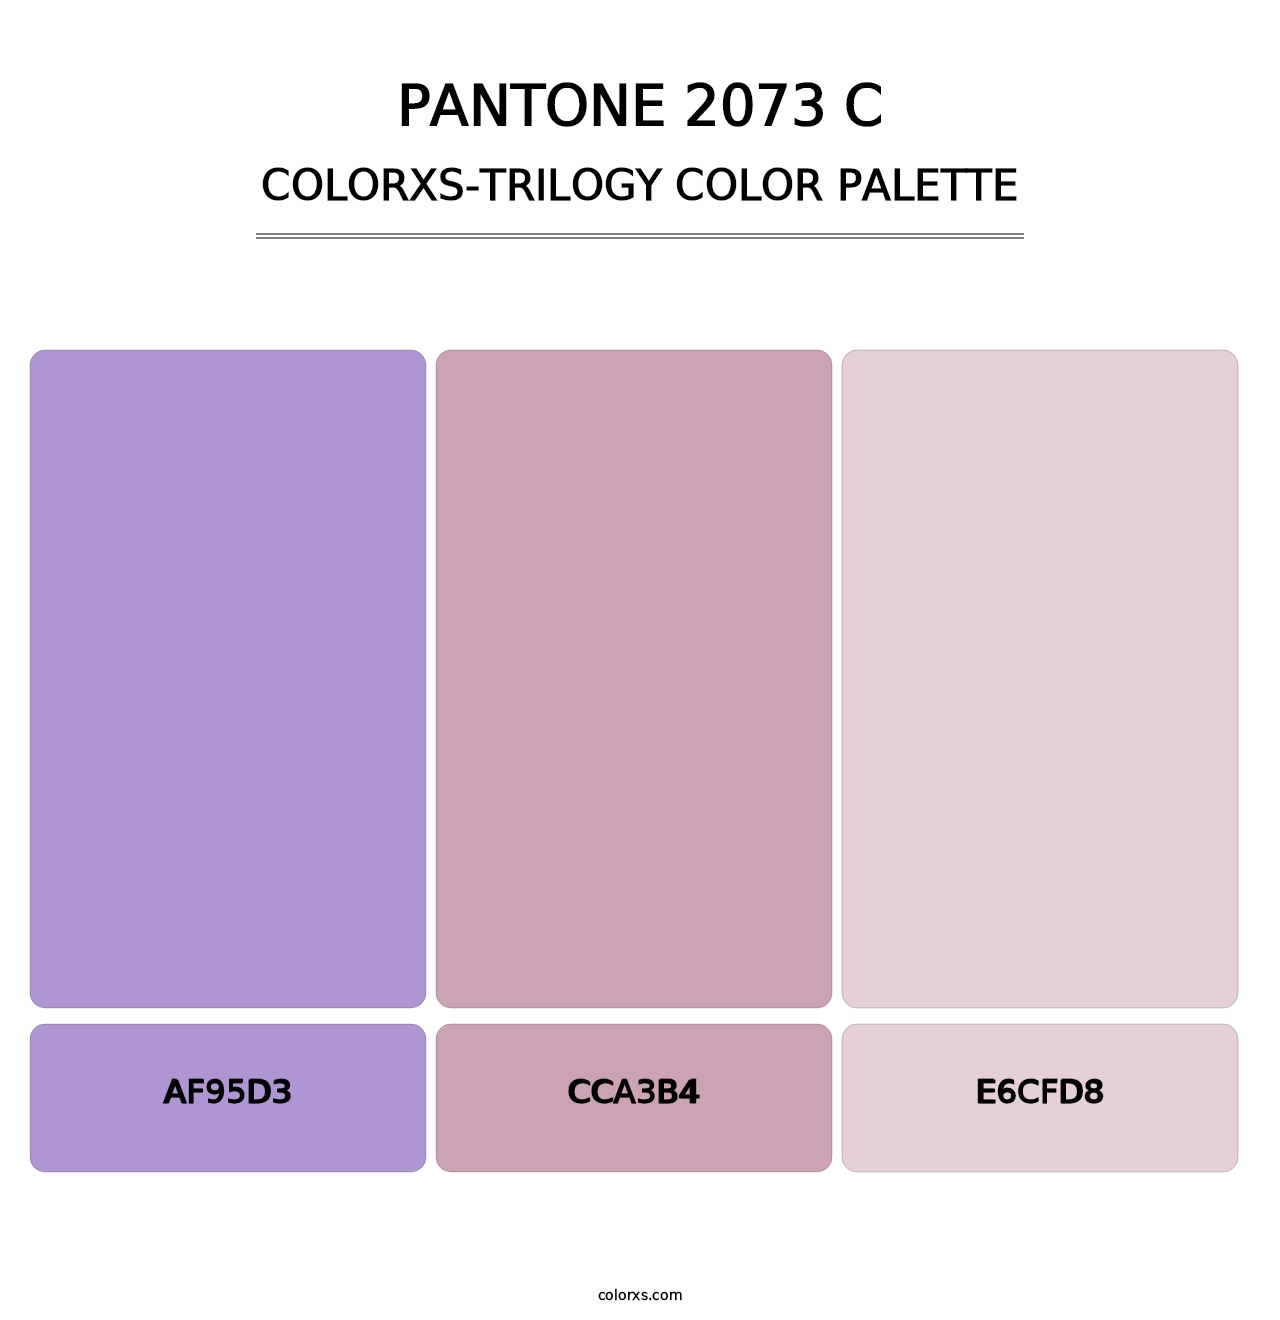 PANTONE 2073 C - Colorxs Trilogy Palette